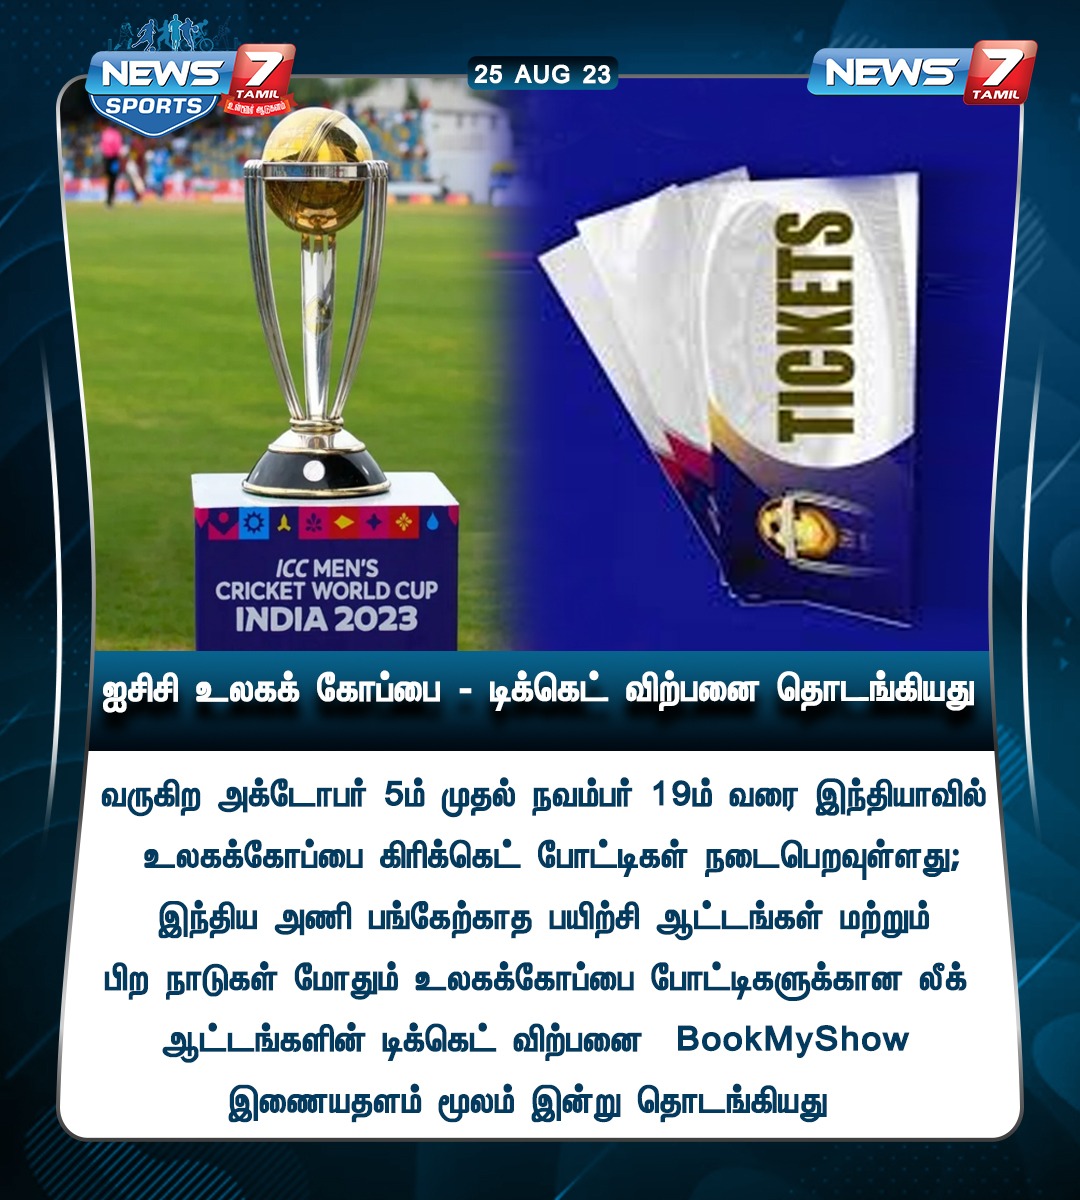 ஐசிசி உலகக் கோப்பை - டிக்கெட் விற்பனை தொடங்கியது

news7tamil.live | #WorldCup2023 | #WorldCupCricket | #CricketWorldCup | #TicketBooking | #News7Tamil | #News7TamilUpdates